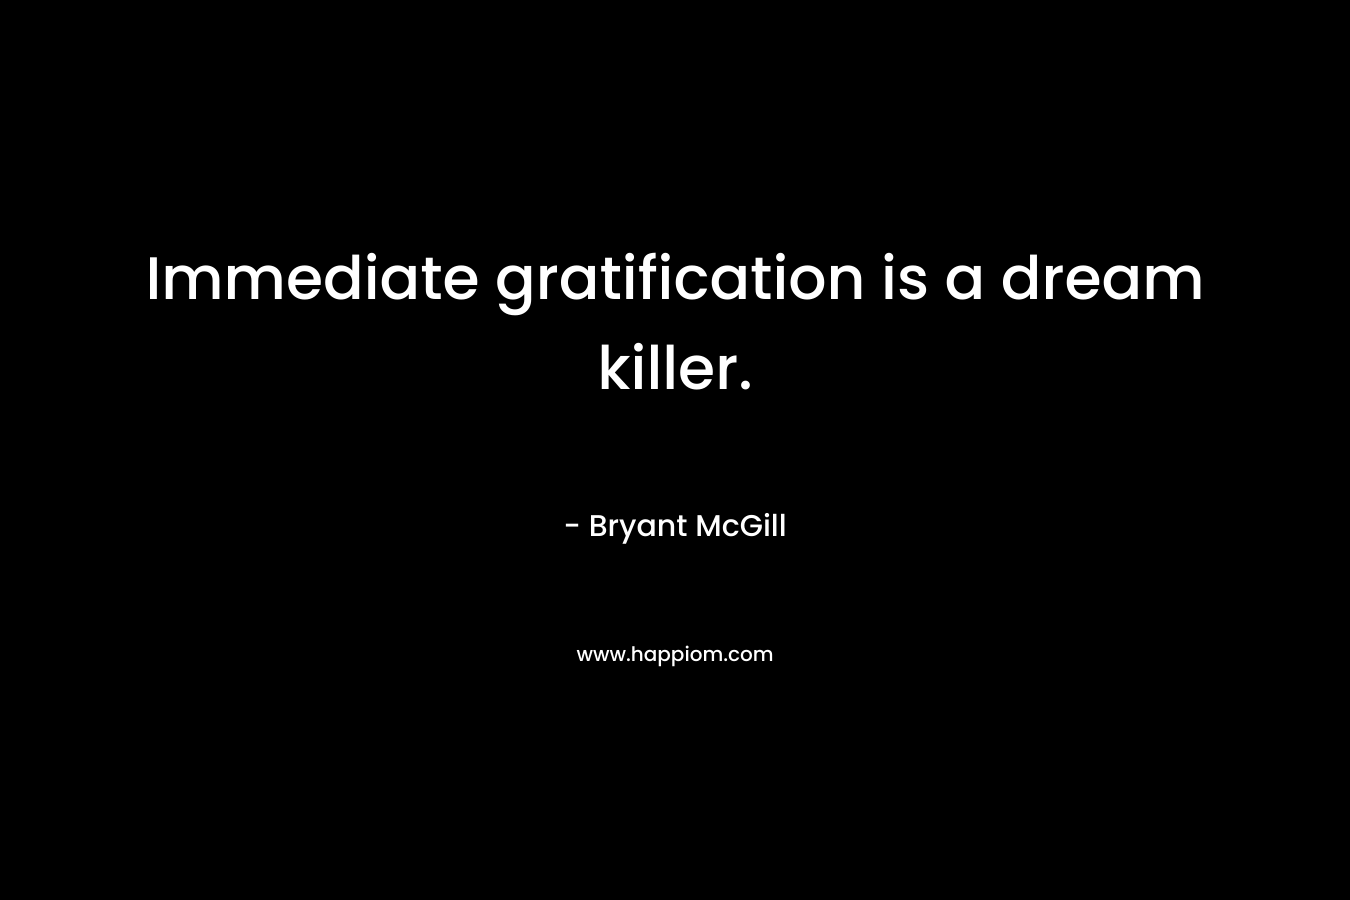 Immediate gratification is a dream killer.